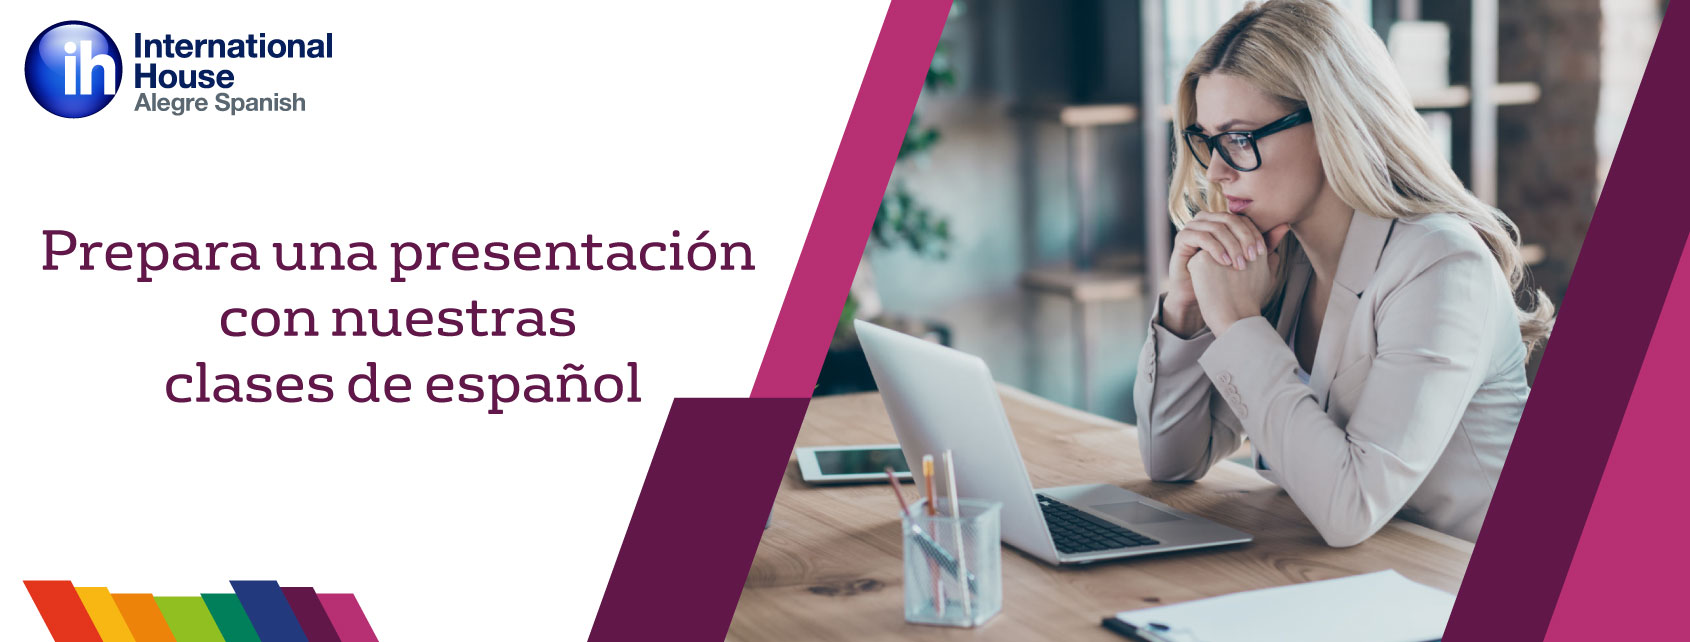 Prepara una presentacion en ingles con nuestras clases de español Prepare a presentation in Spanish